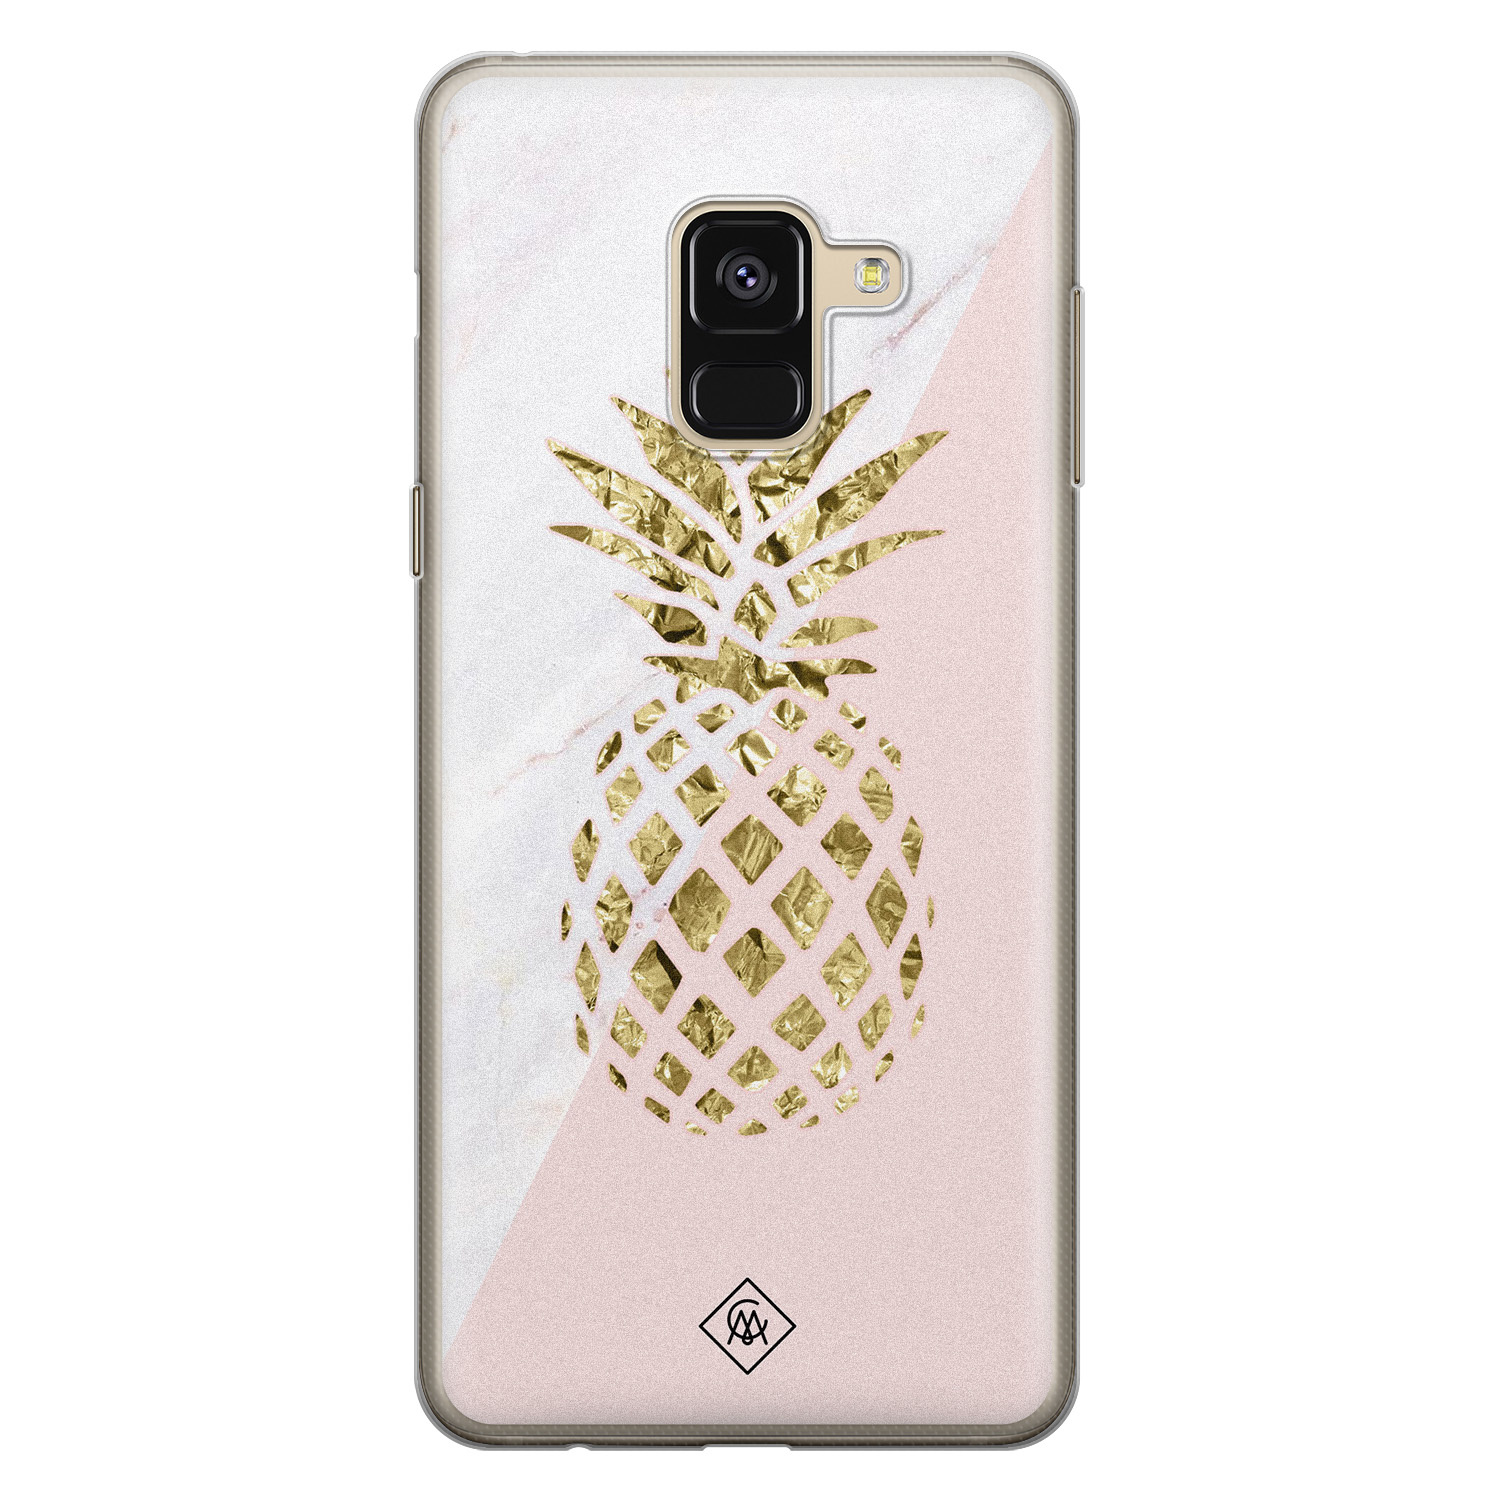 Samsung Galaxy A8 (2018) siliconen hoesje - Ananas